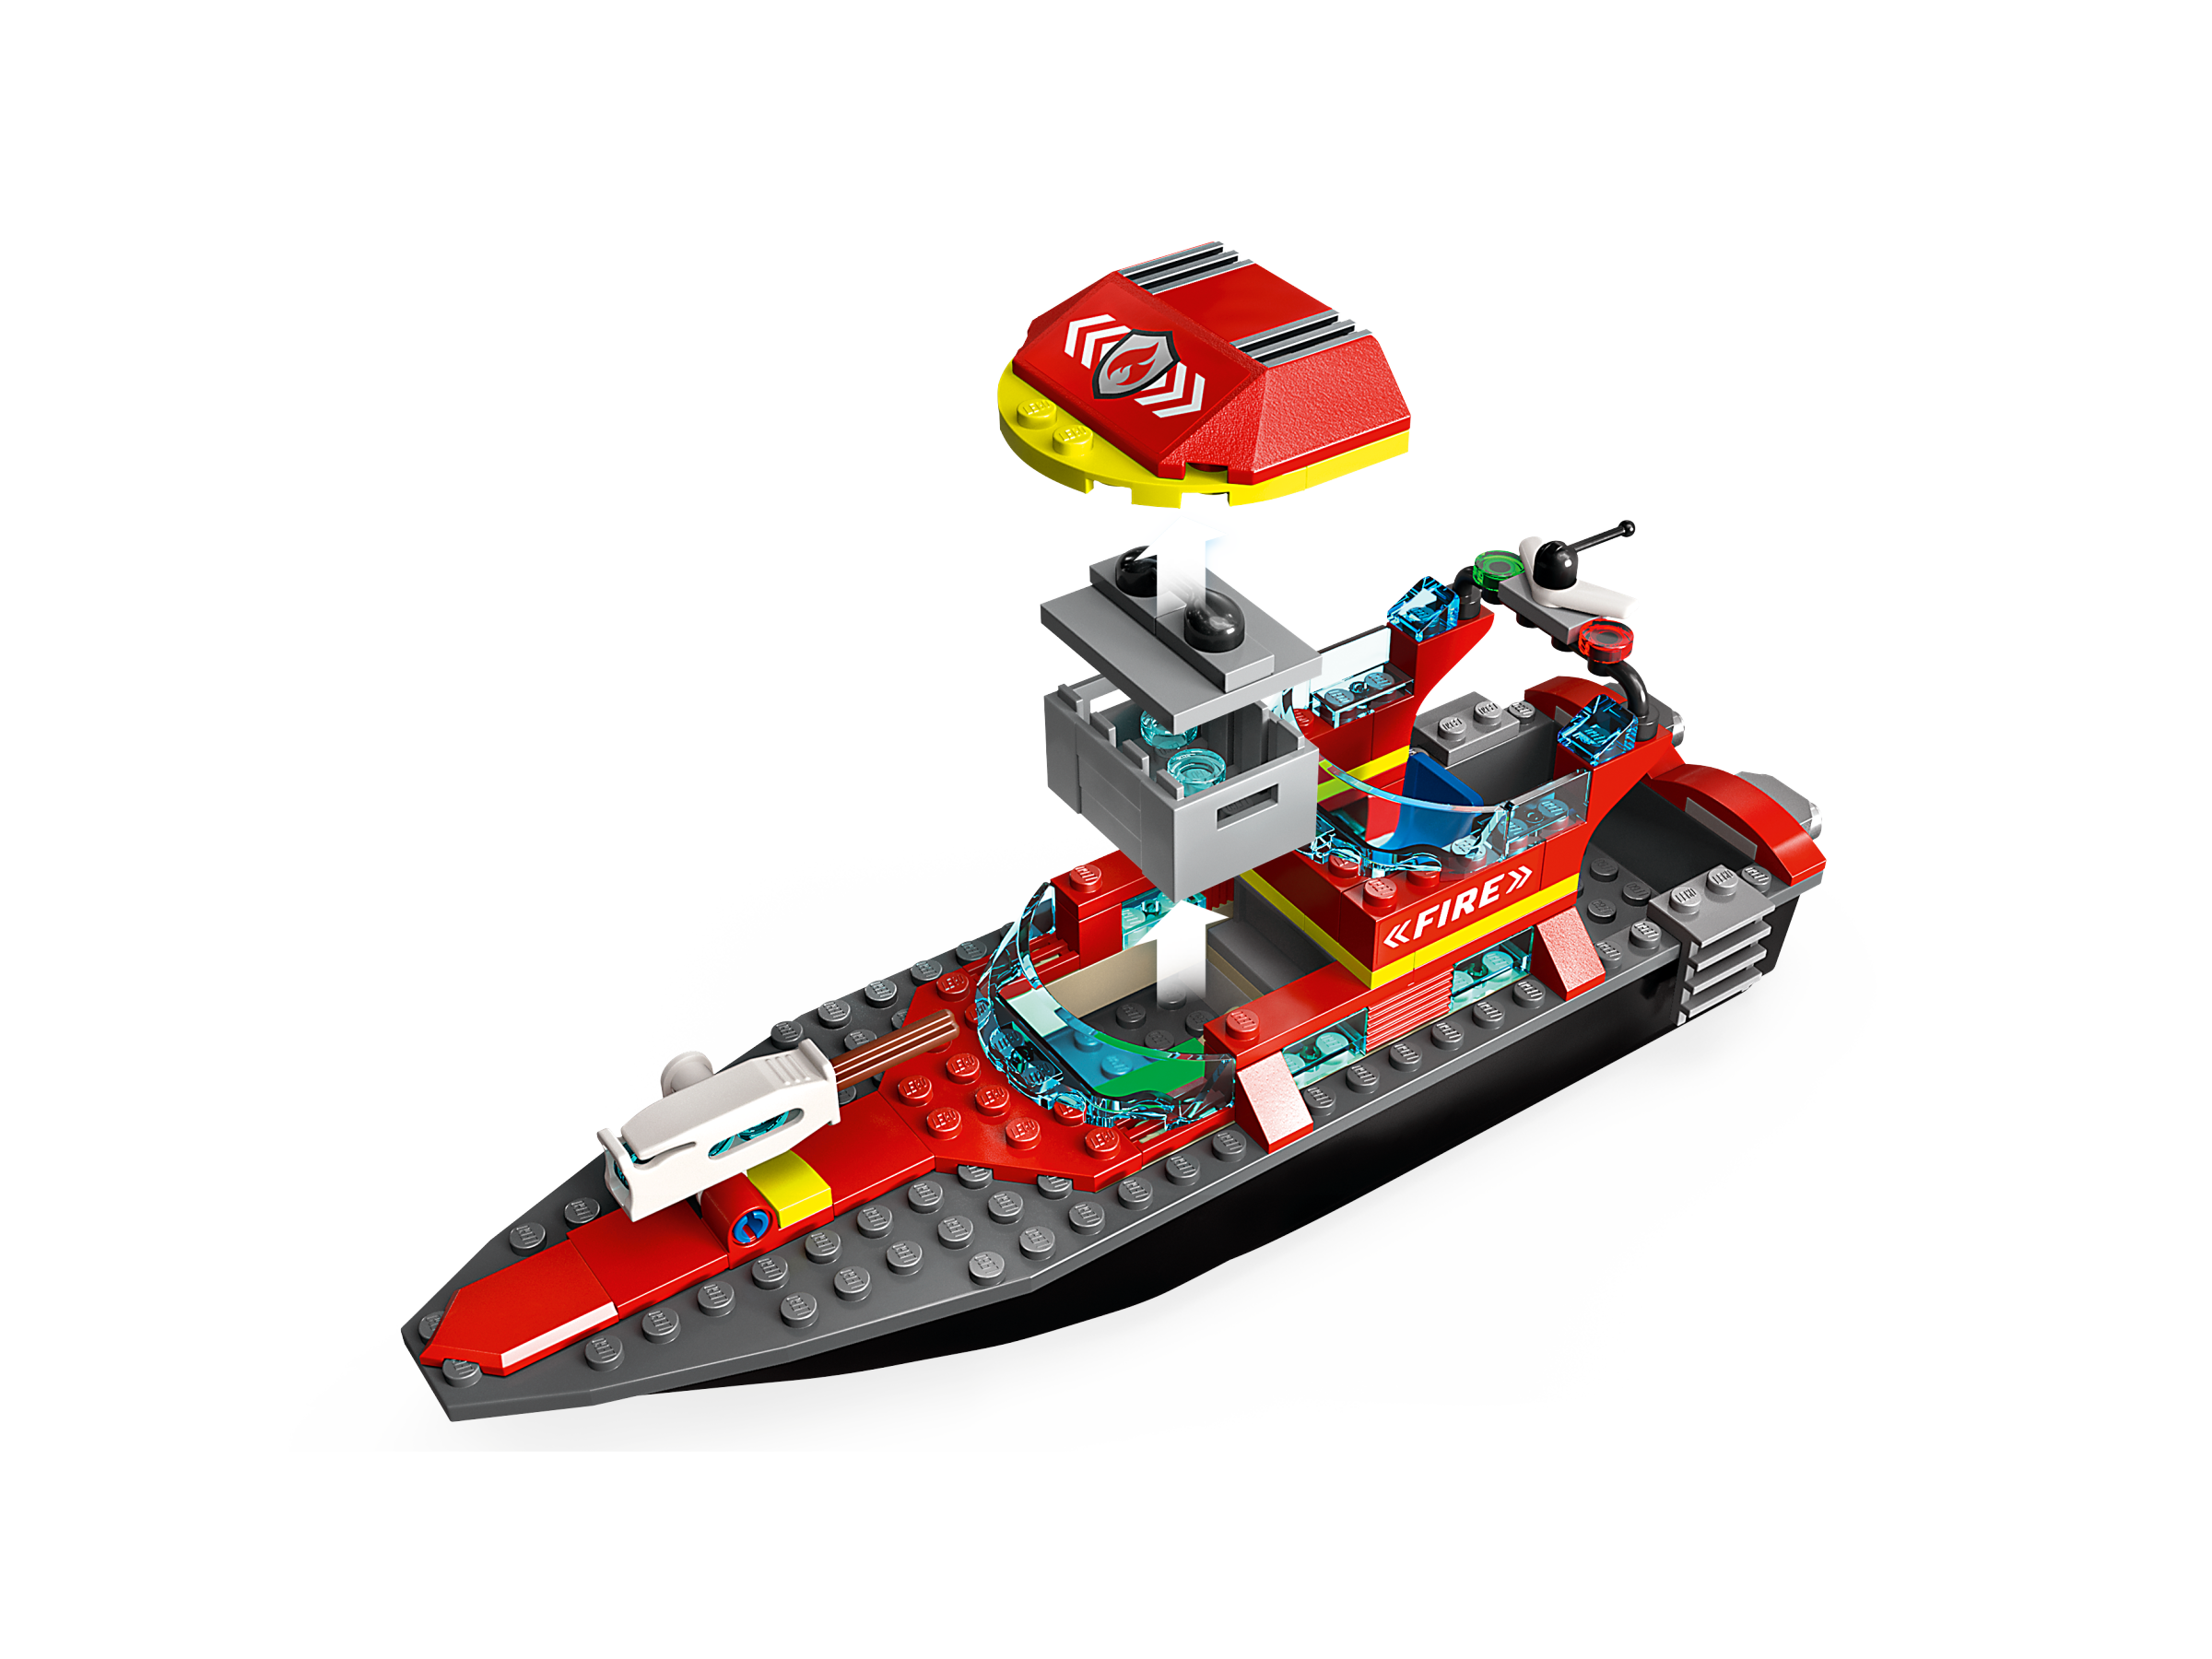 Fiasko erindringer Har lært Fire Rescue Boat 60373 | City | Buy online at the Official LEGO® Shop US